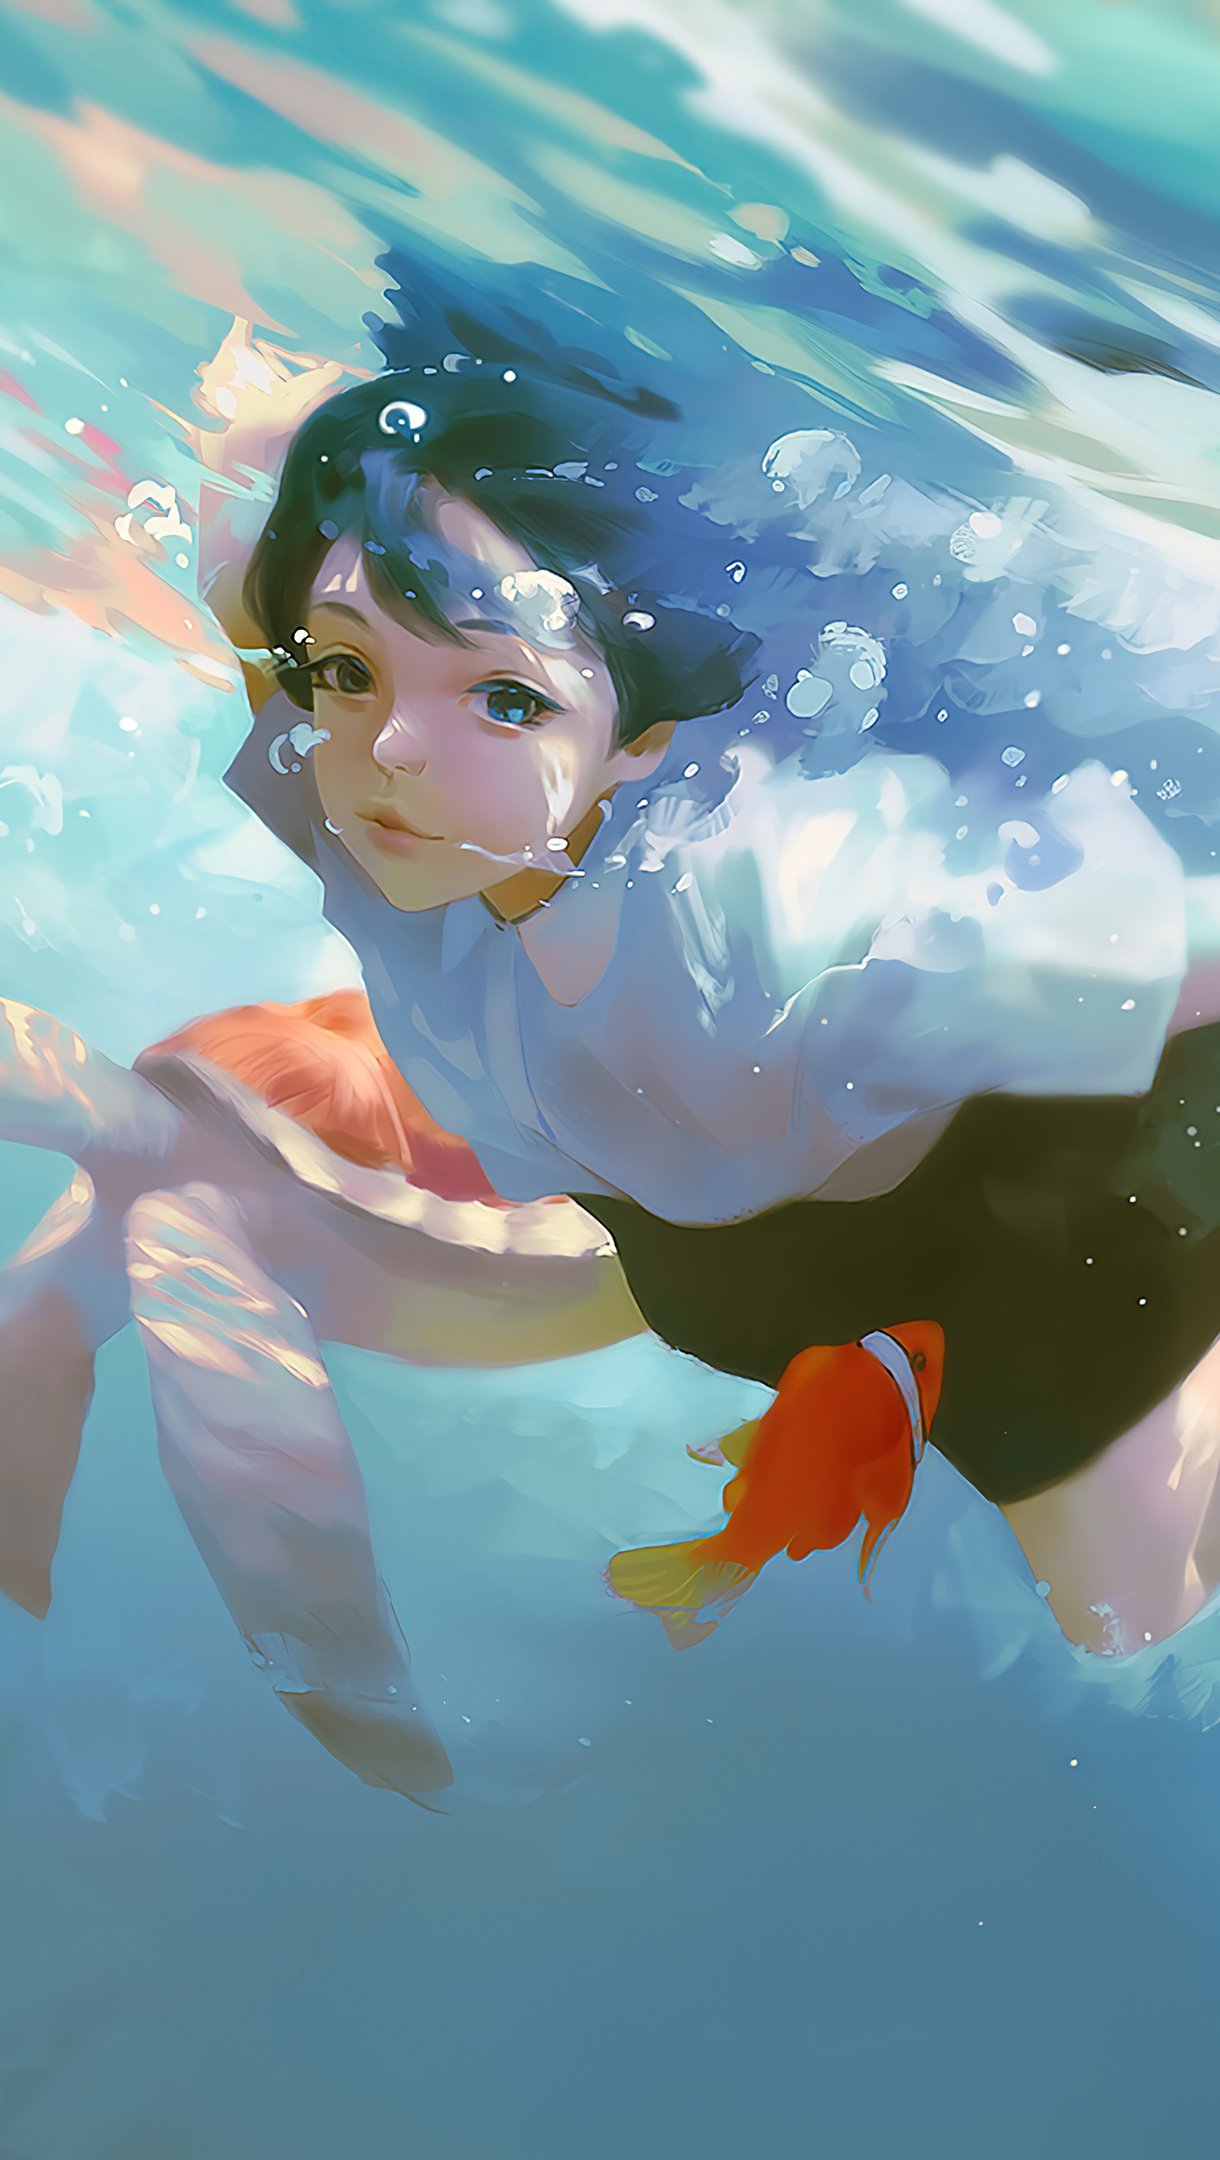 Wallpaper Anime girl nadando Vertical